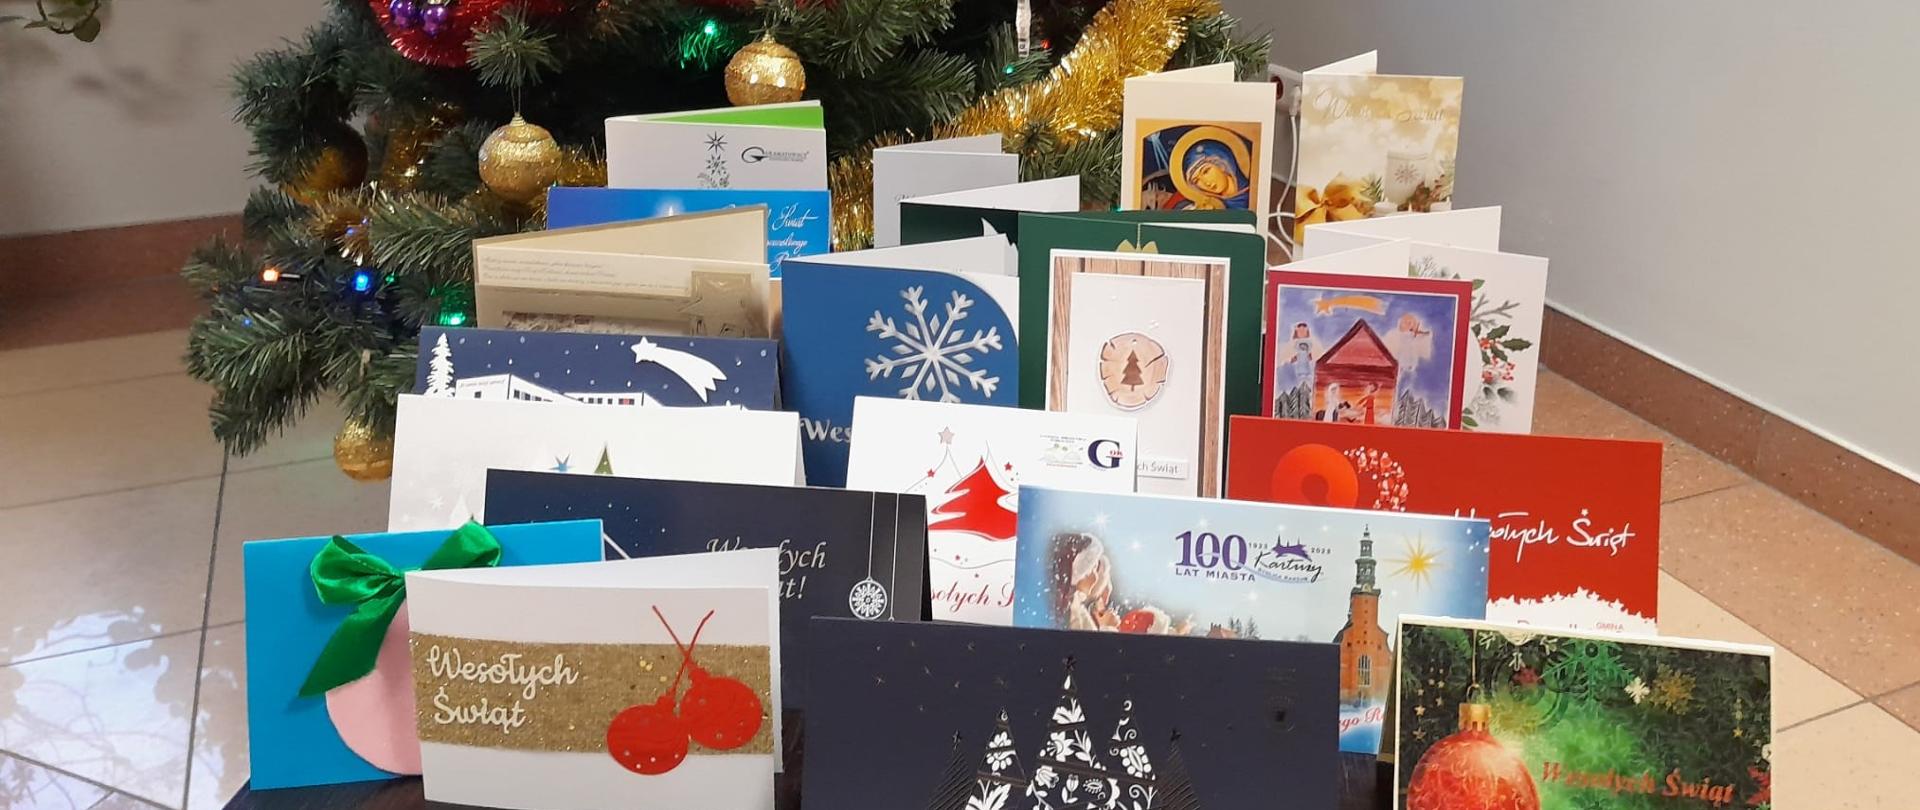 Kartki z życzeniami świątecznymi ustawione na stoliku na tle choinki